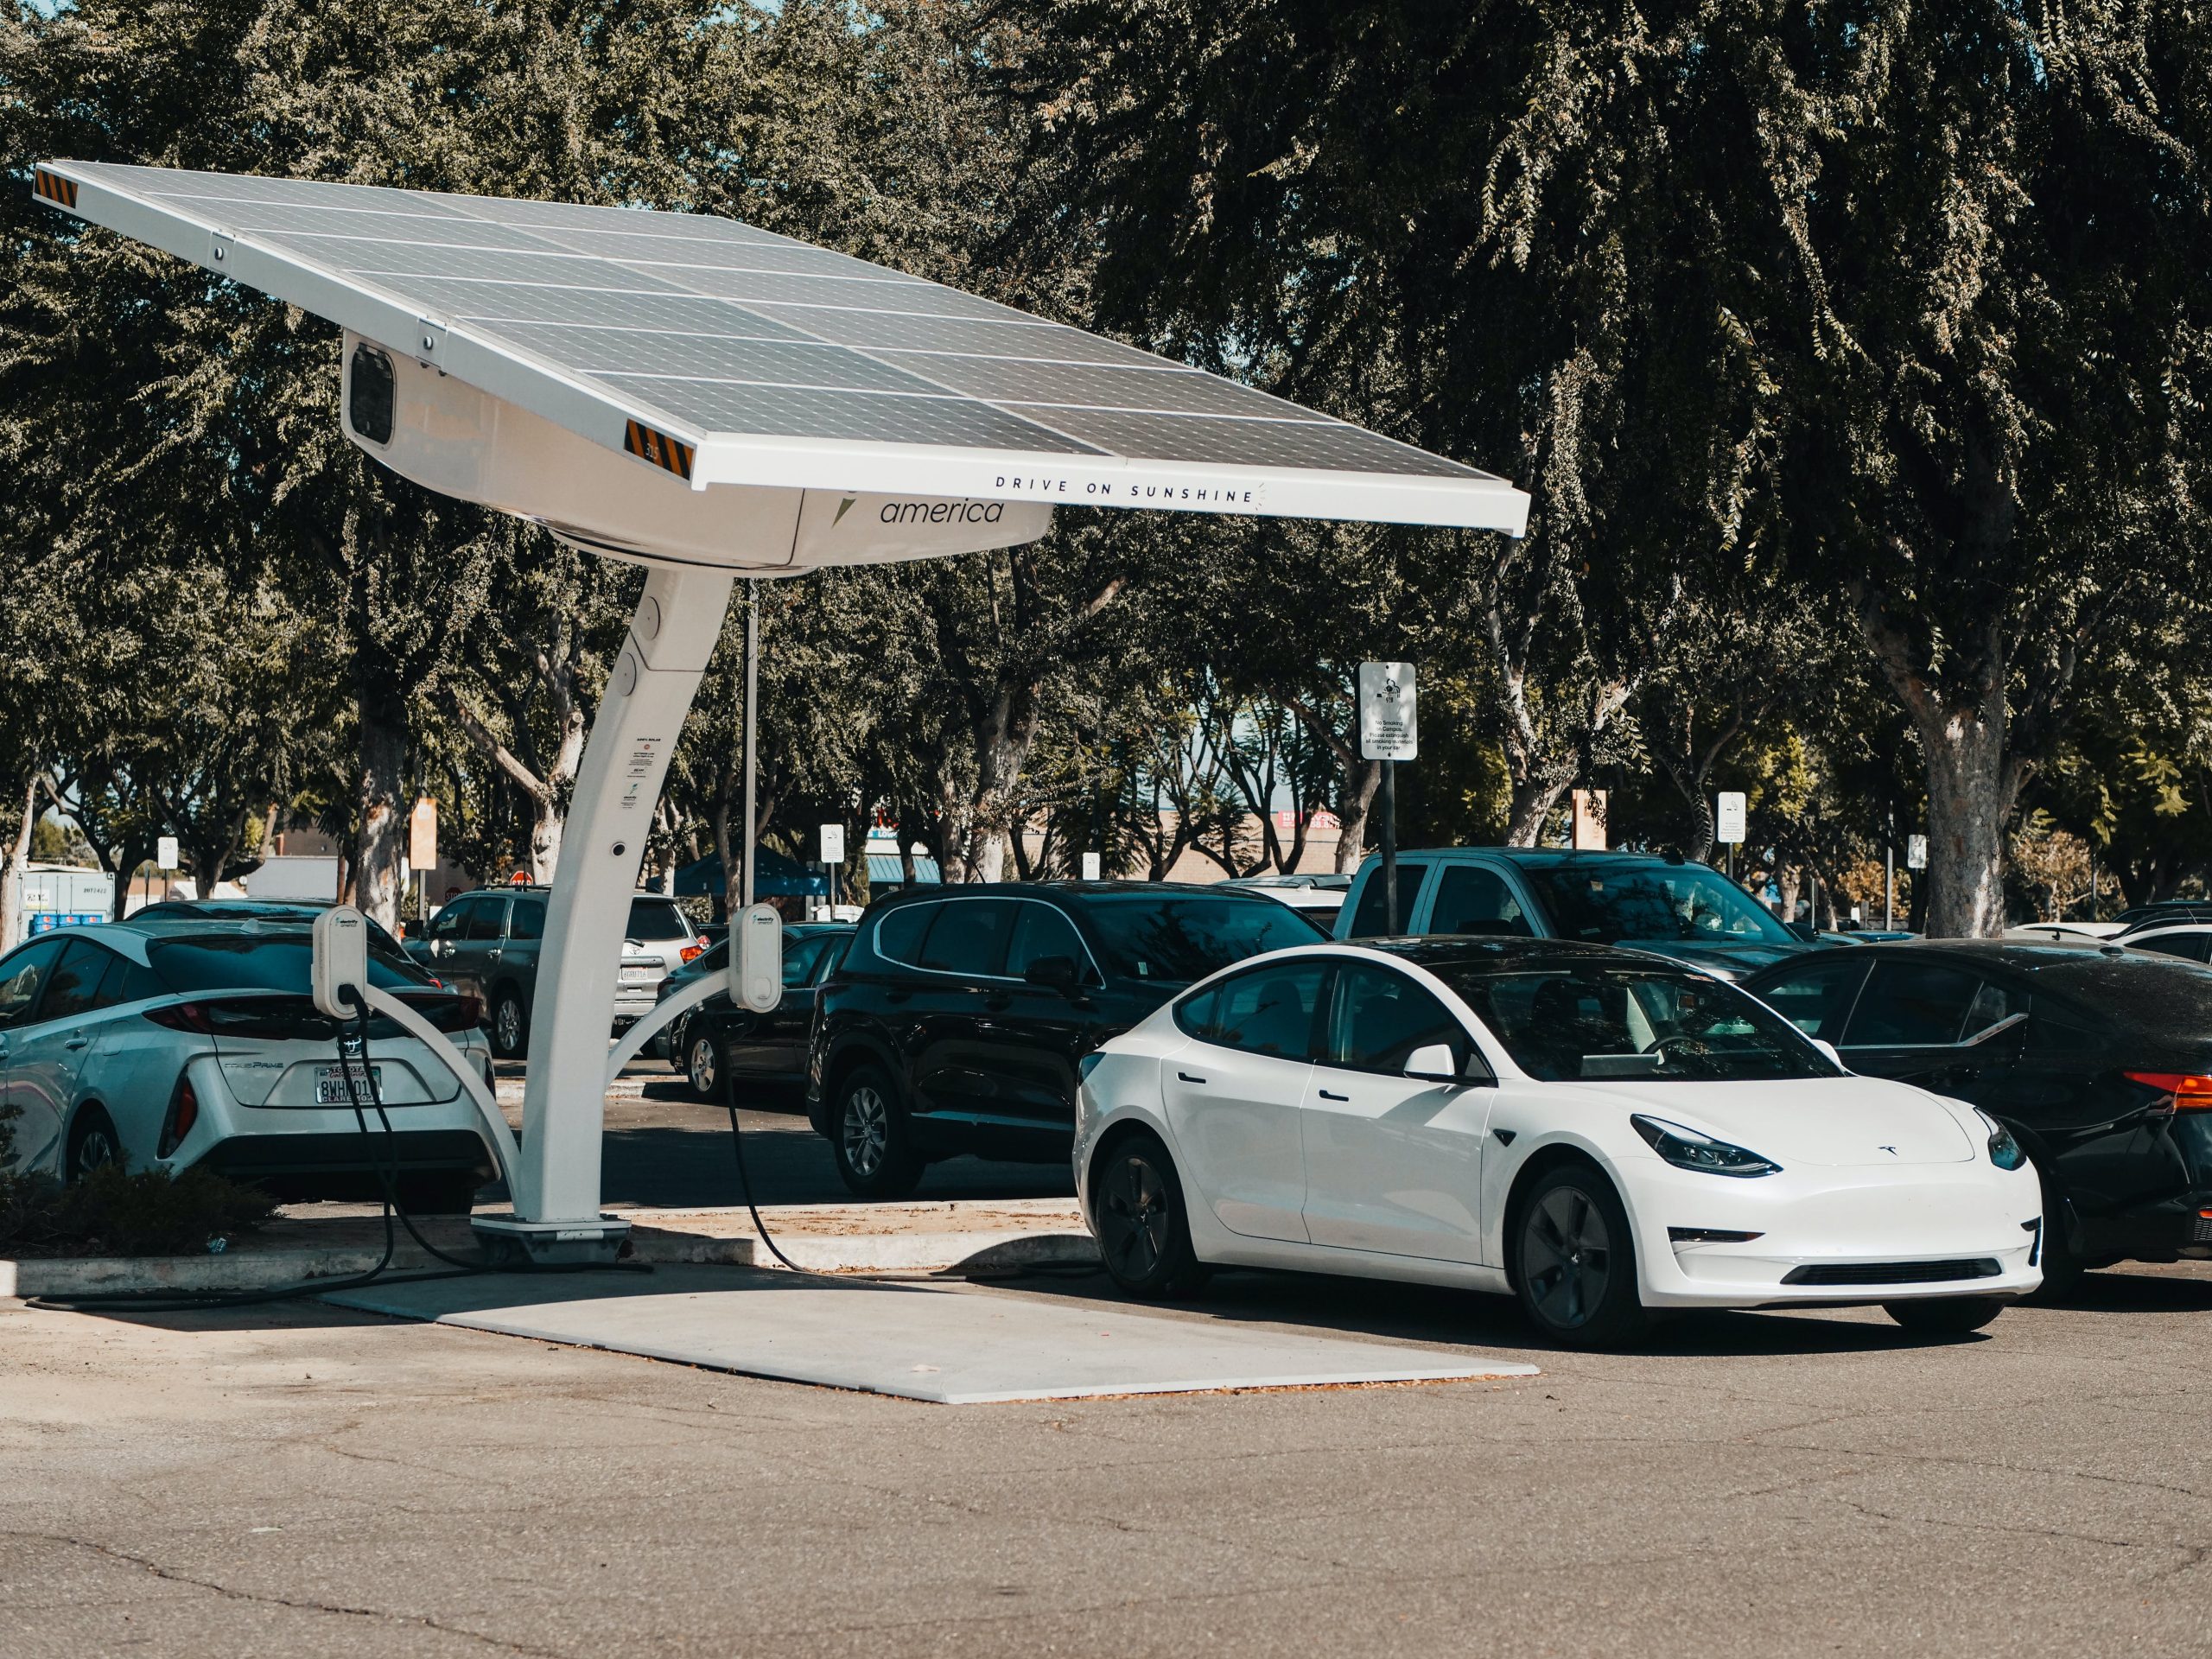 Renting de coches eléctricos: Una opción sostenible para cuidar el medio ambiente